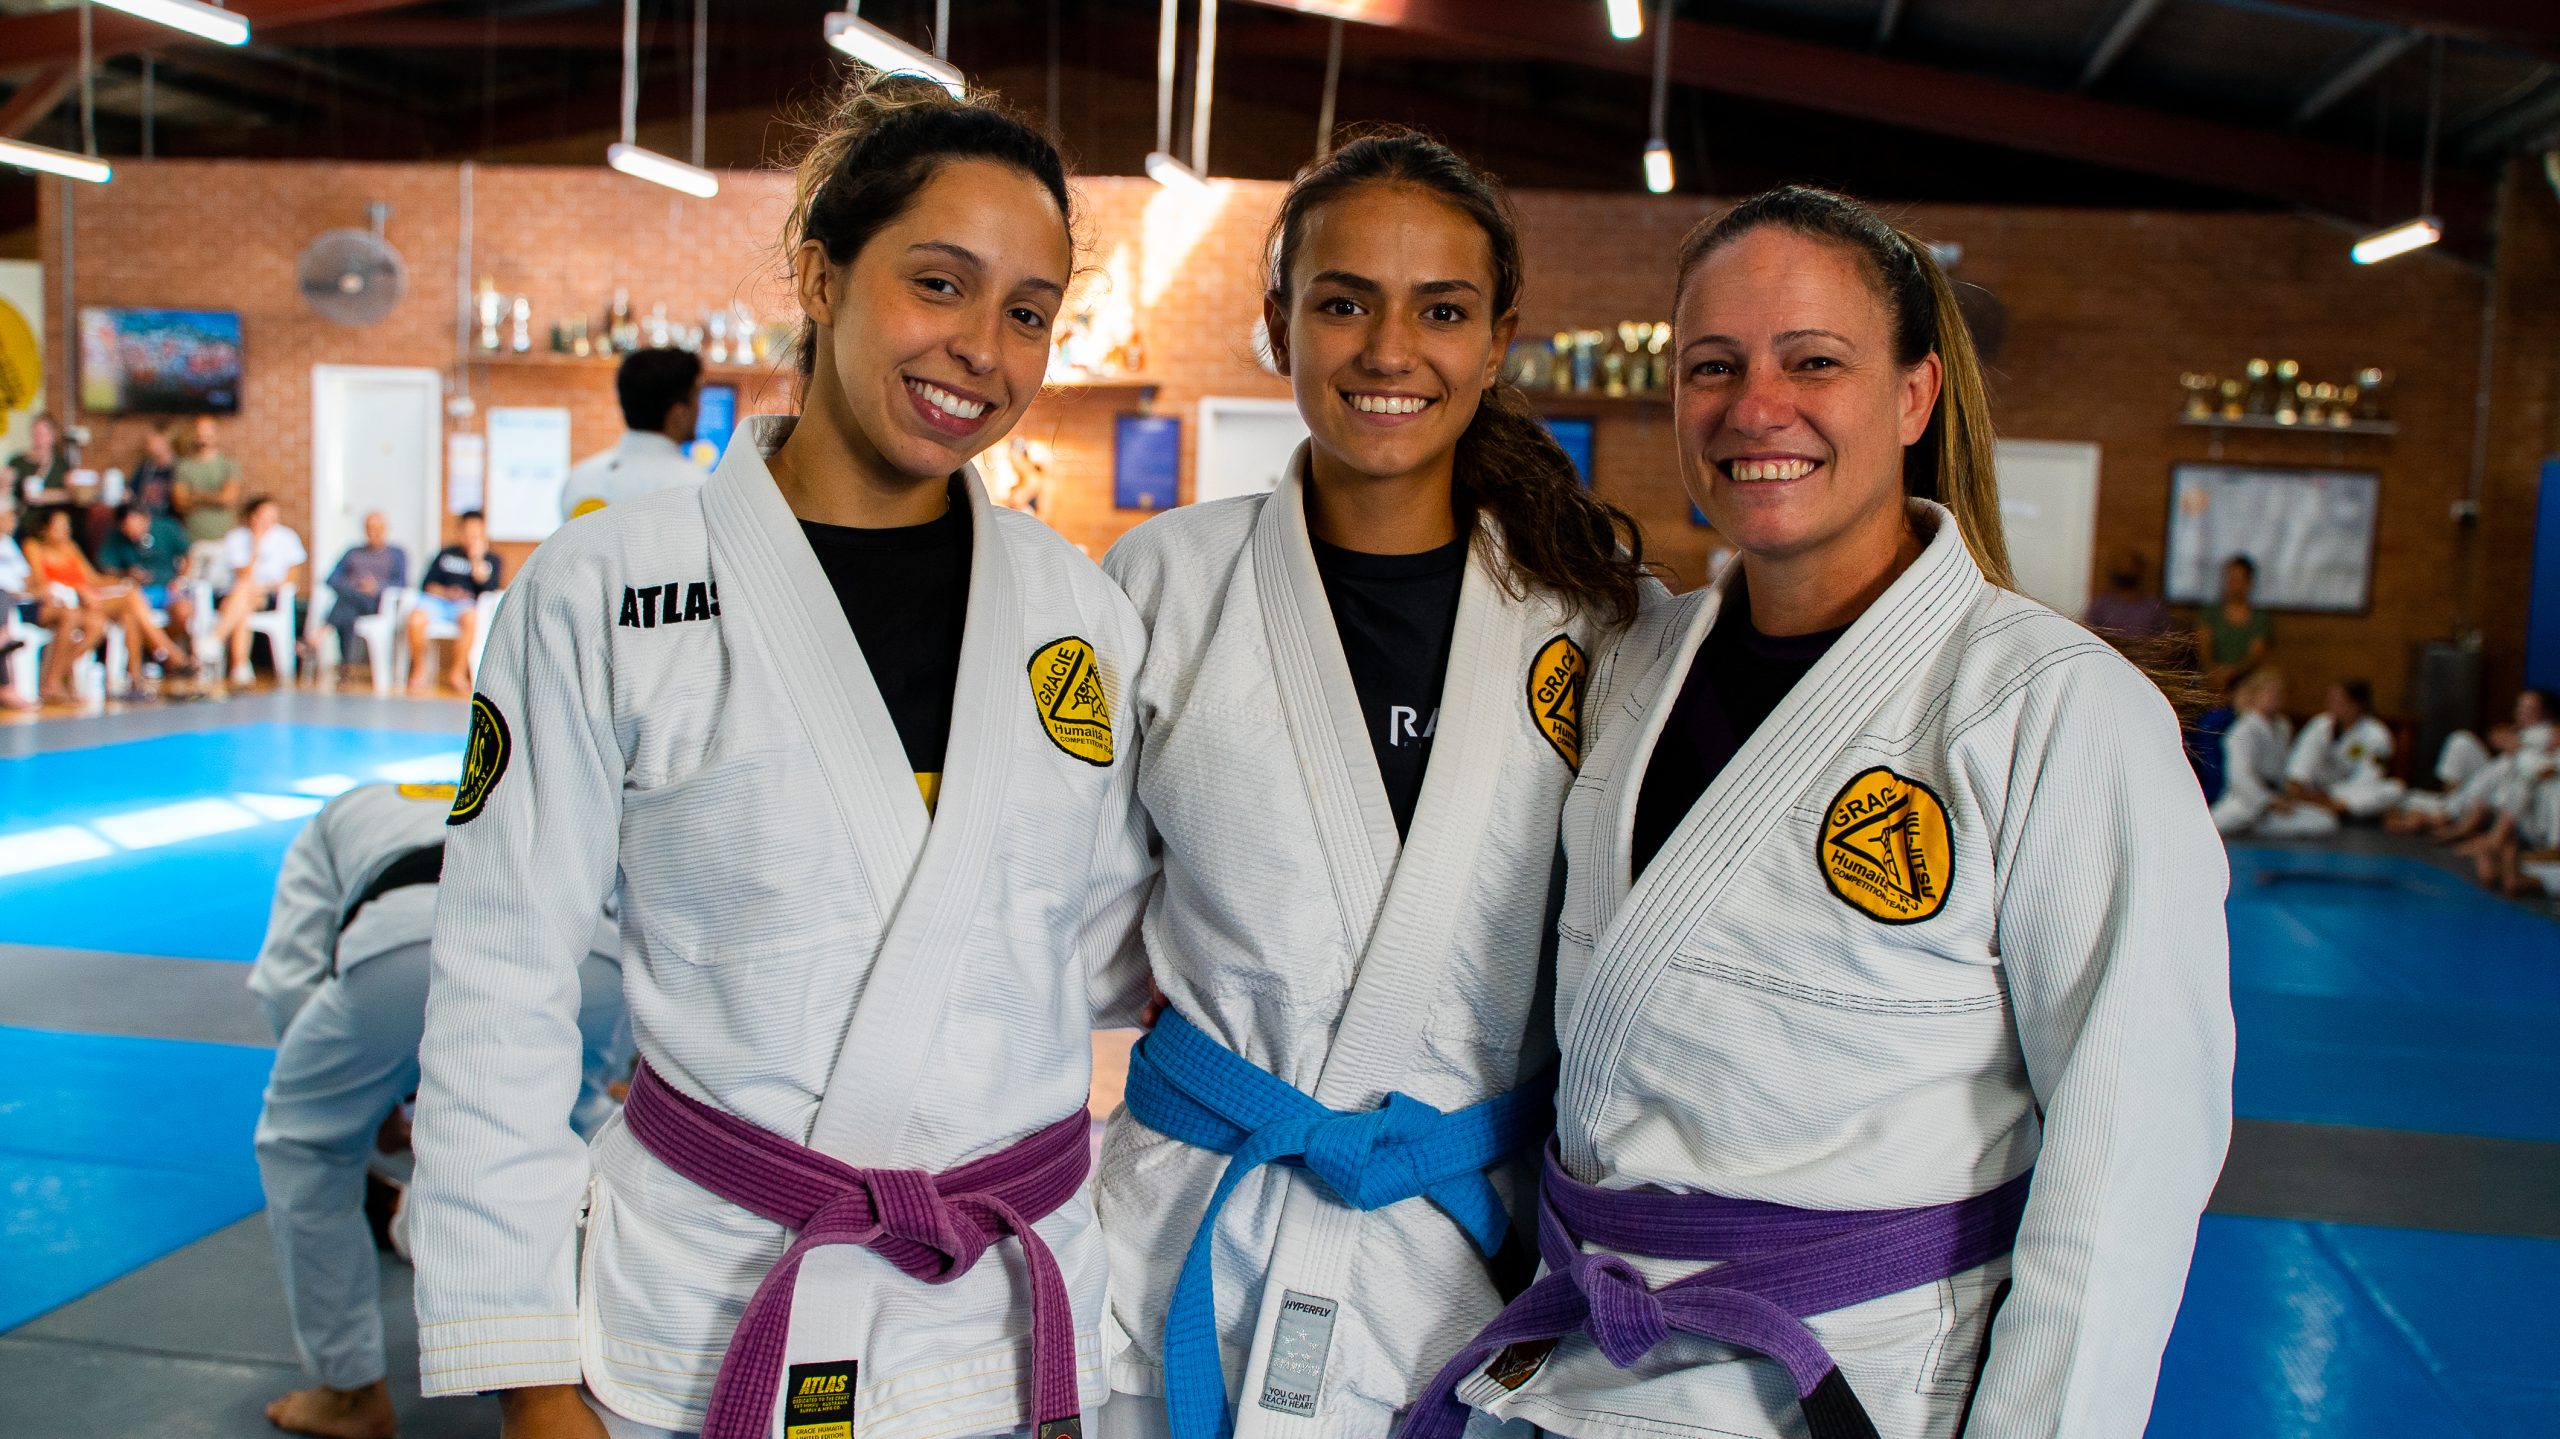 al; the coaches girls training Jiu-Jitsu